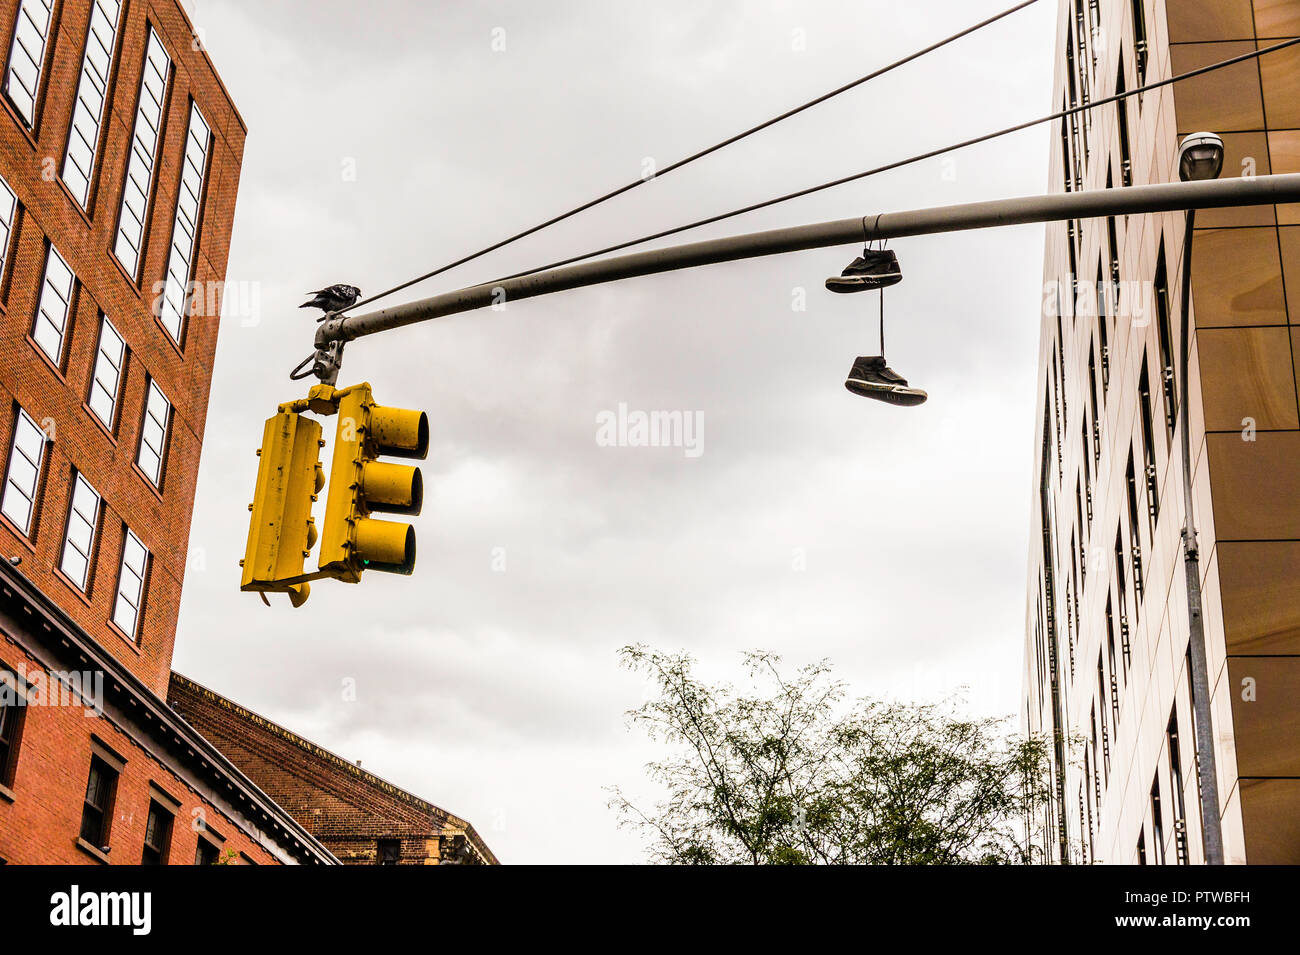 Schuhe auf eine Ampel Lower Manhattan New York, New York, USA  Stockfotografie - Alamy